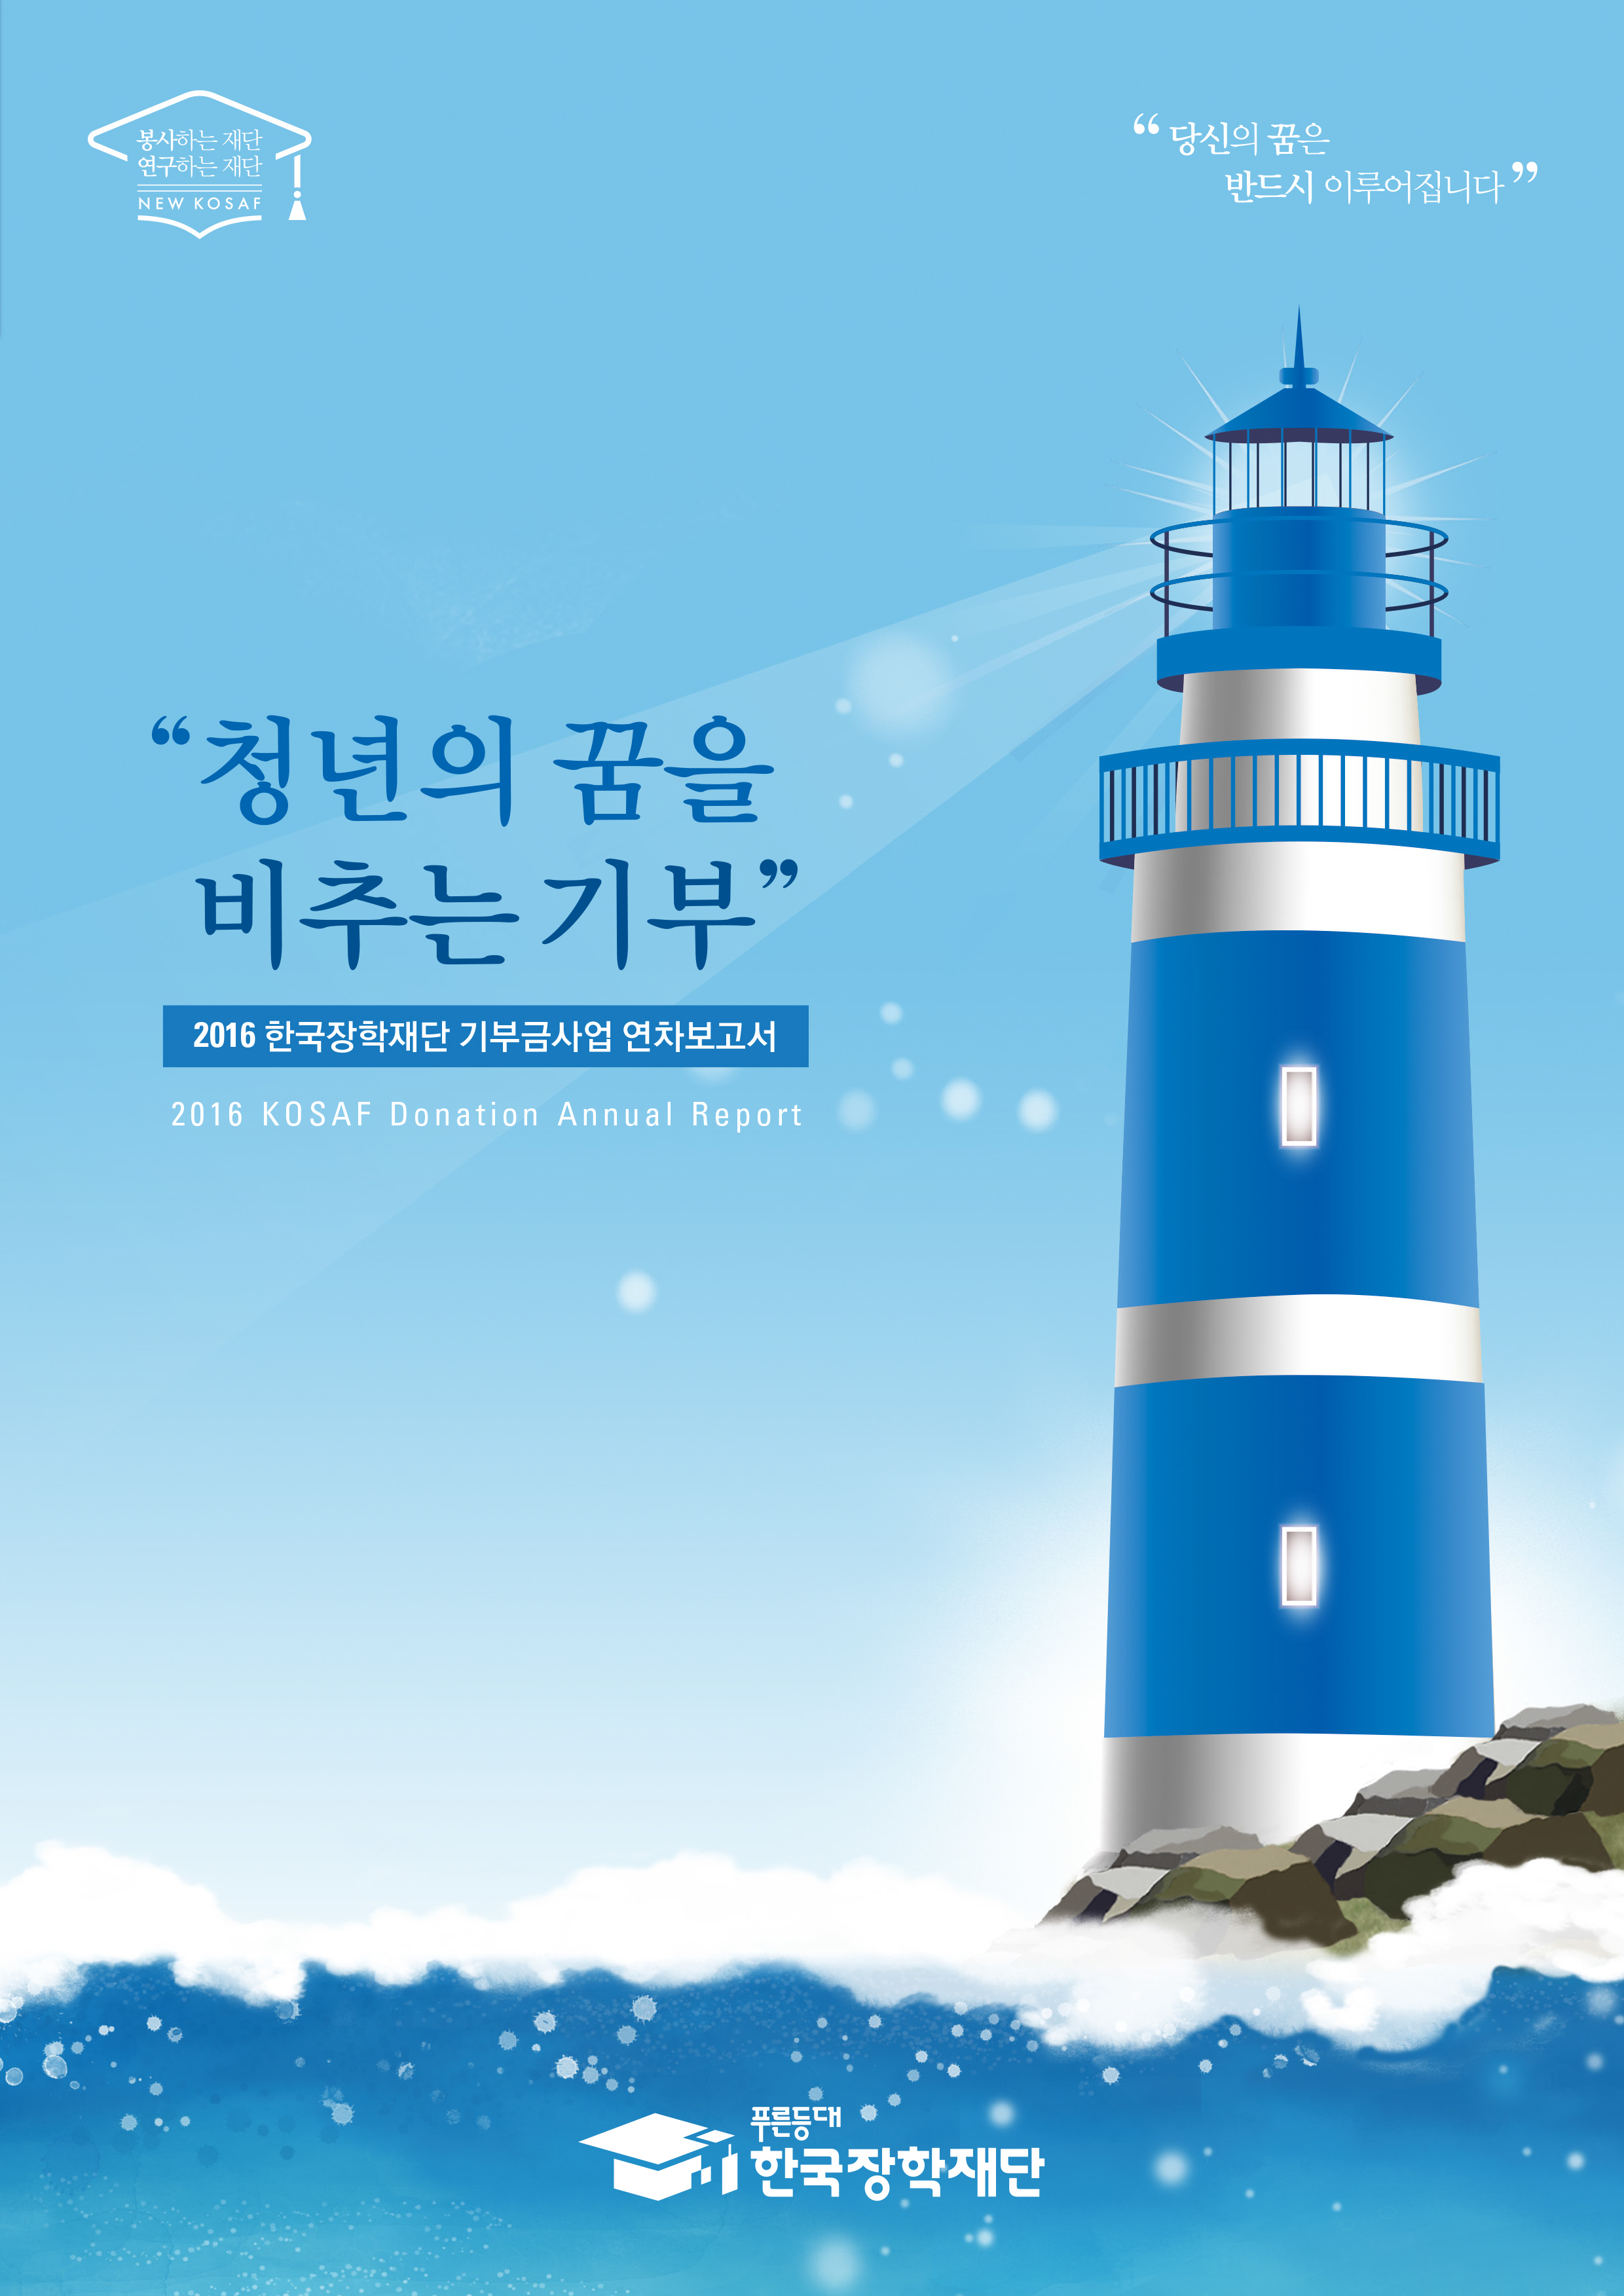 2016년 한국장학재단 기부금사업 연차보고서 - 해당 이미지를 클릭하면 다운로드가 실행됩니다.